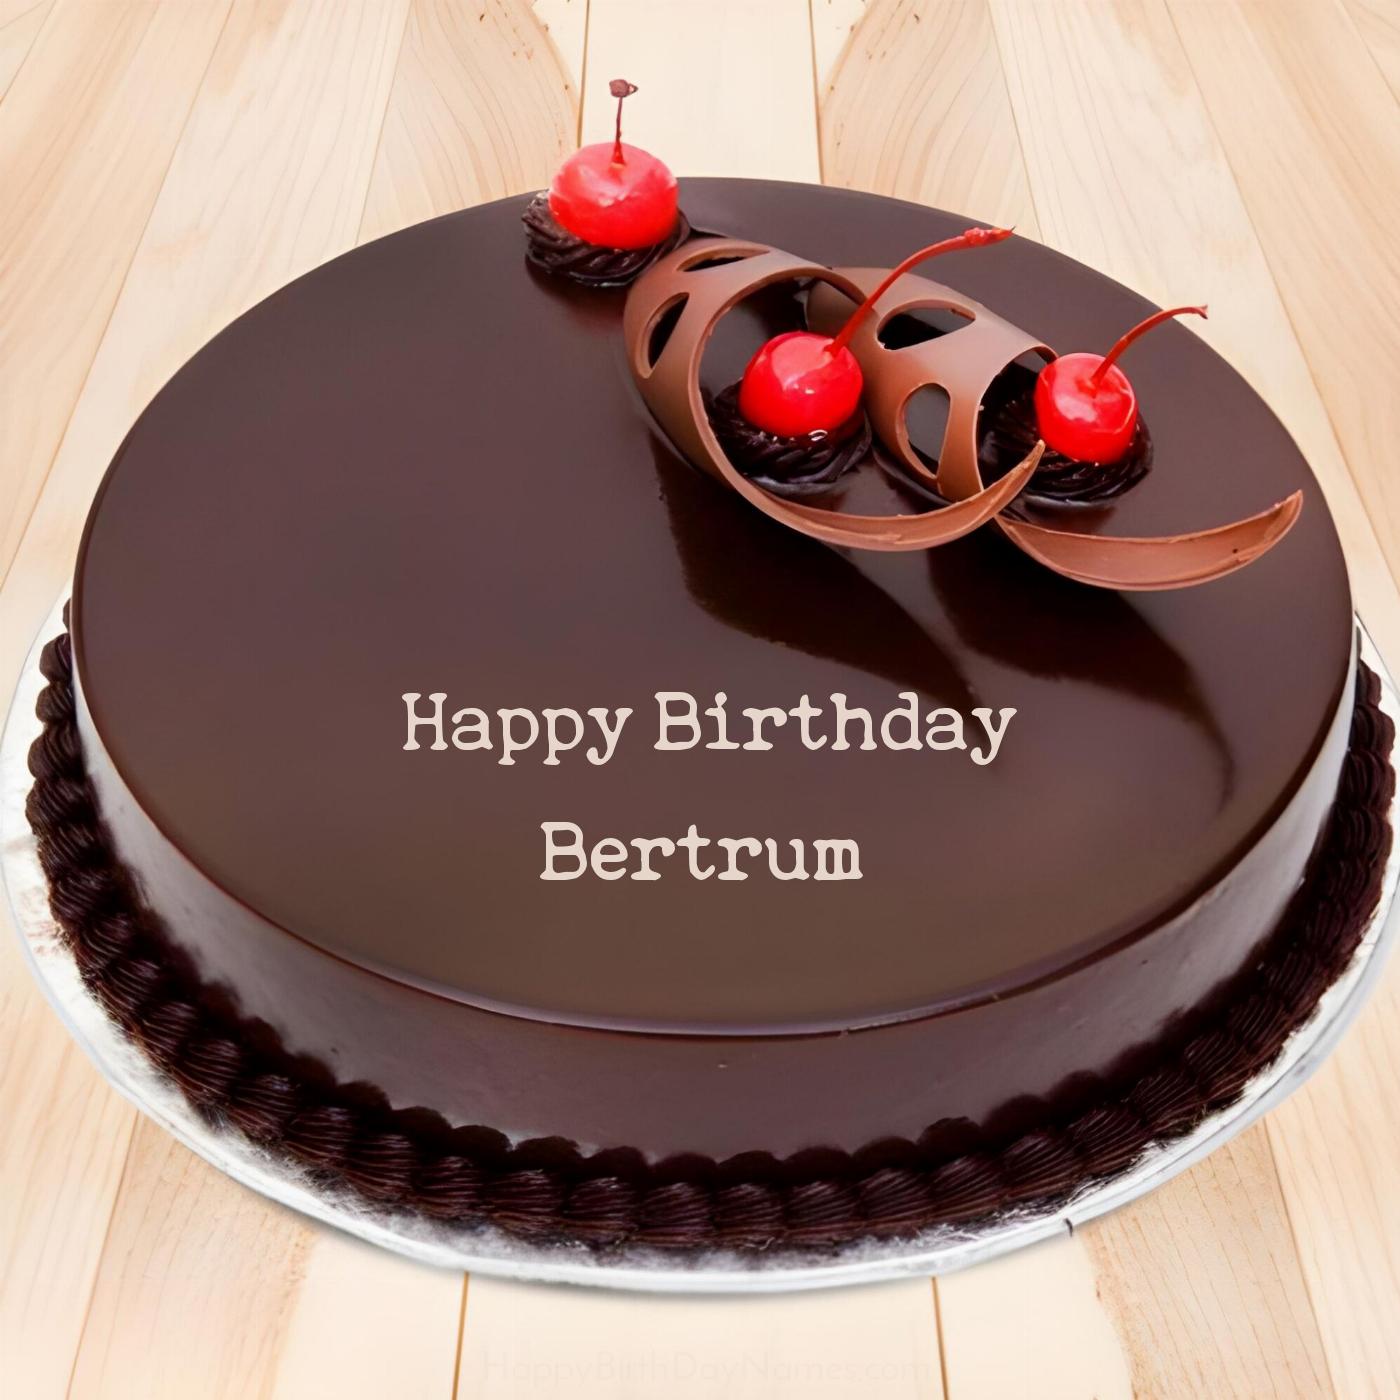 Happy Birthday Bertrum Chocolate Cherry Cake